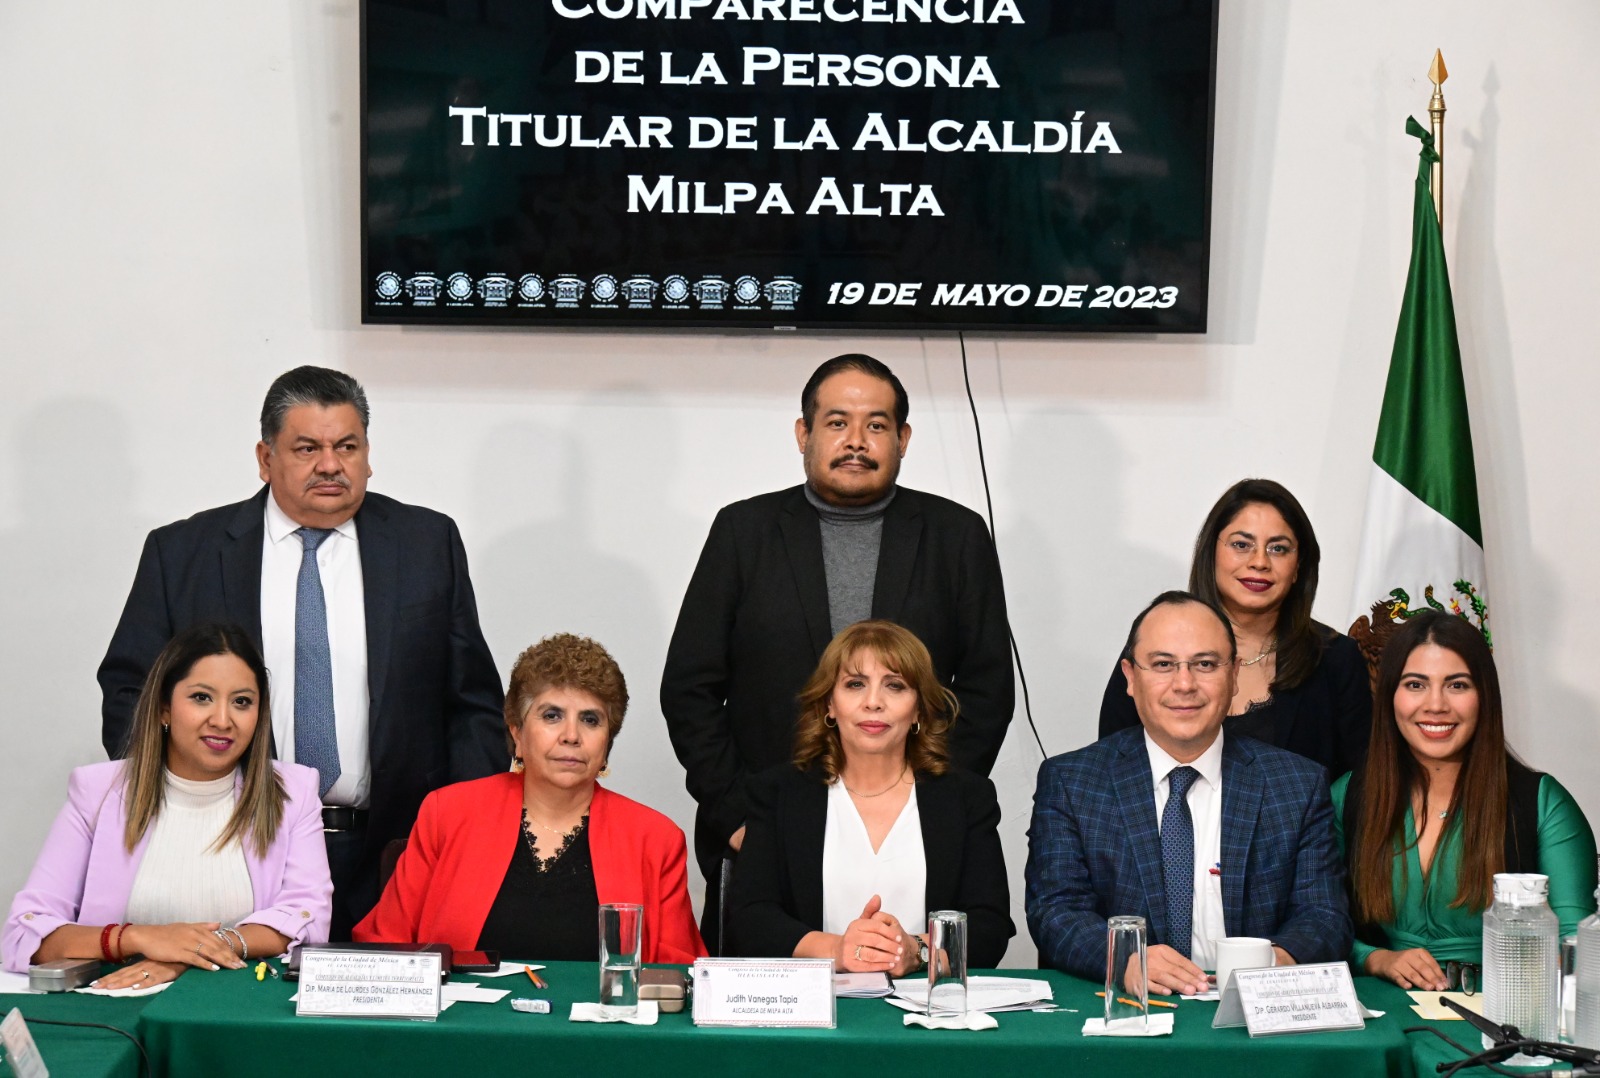 Legisladores capitalinos reconocen avances y señalan pendientes en Milpa Alta